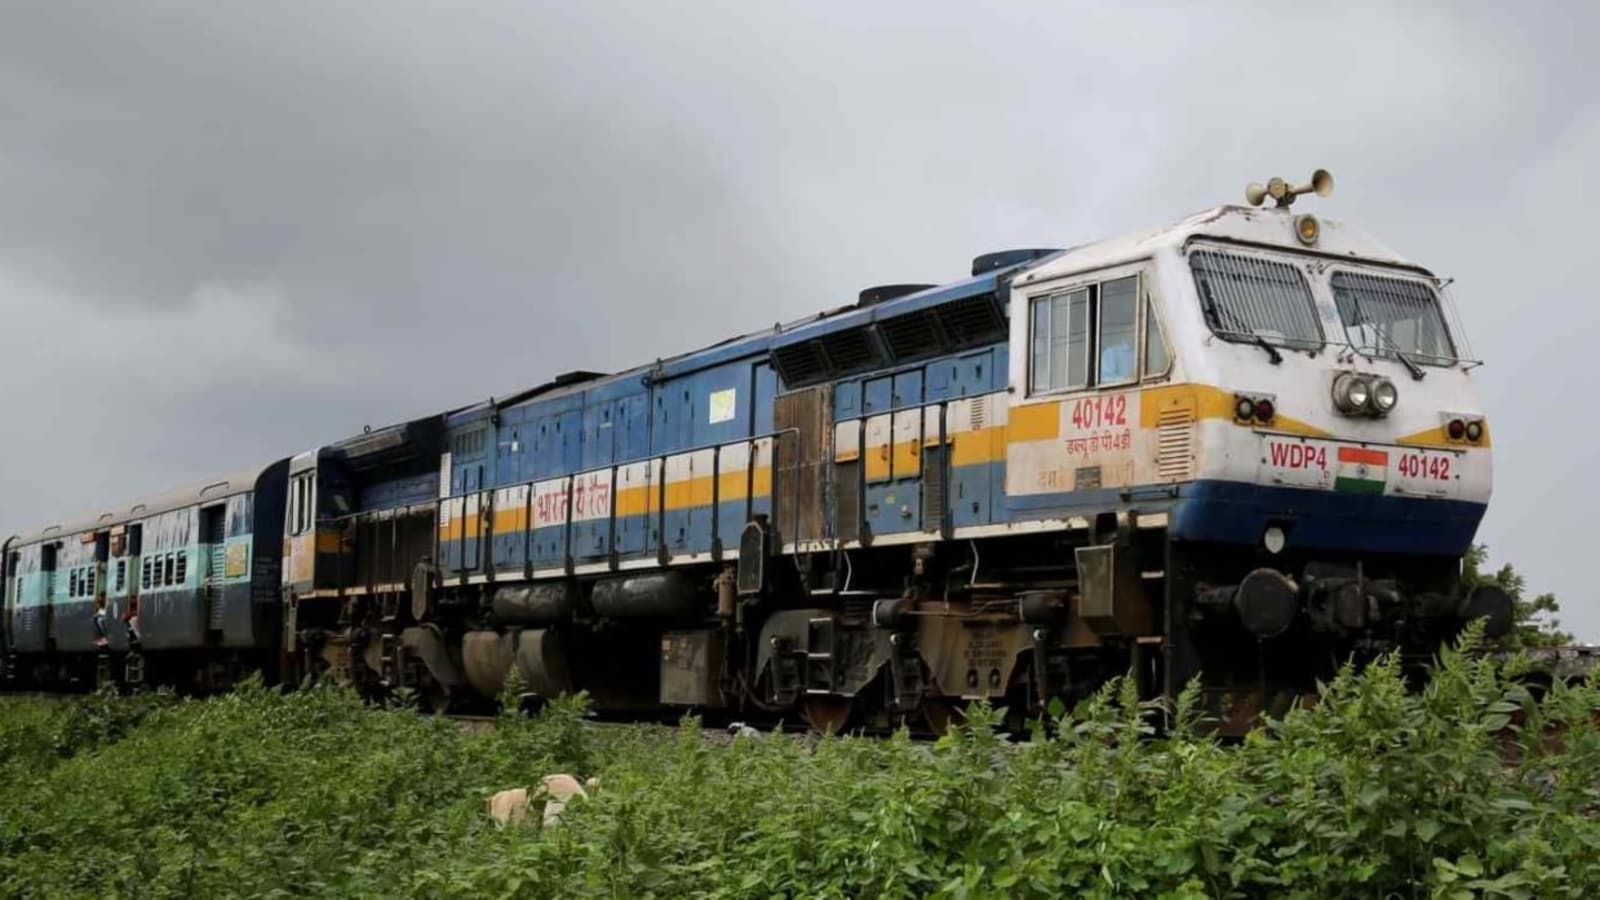 लखनऊ-गोरखपुर इंटरसिटी, लखनऊ, भारतीय रेल, इंडियन रेलवे, Lucknow-Gorakhpur Intercity, Lucknow, Indian Railways, Indian Railways